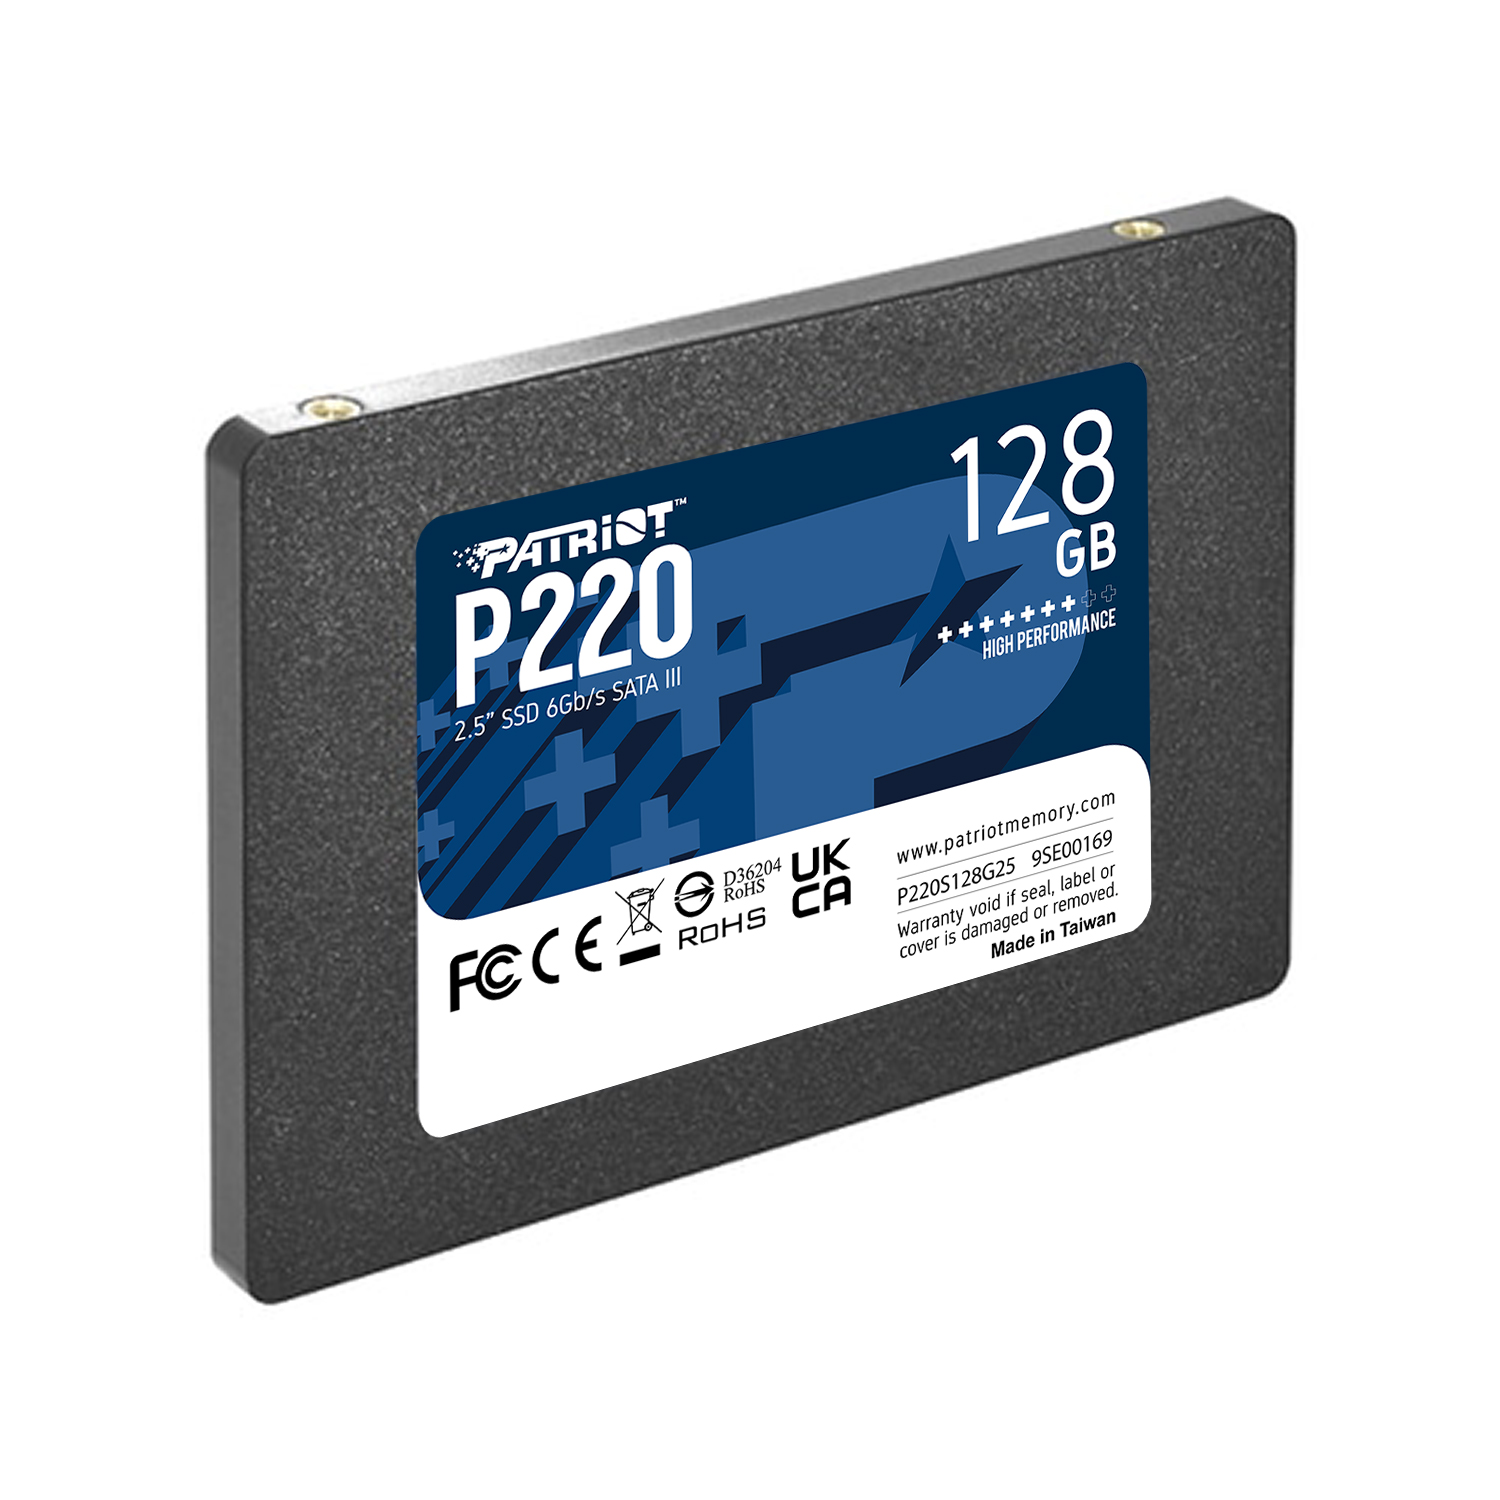 اس اس دی اینترنال پتریوت مدل P220 ظرفیت 128 گیگابایت